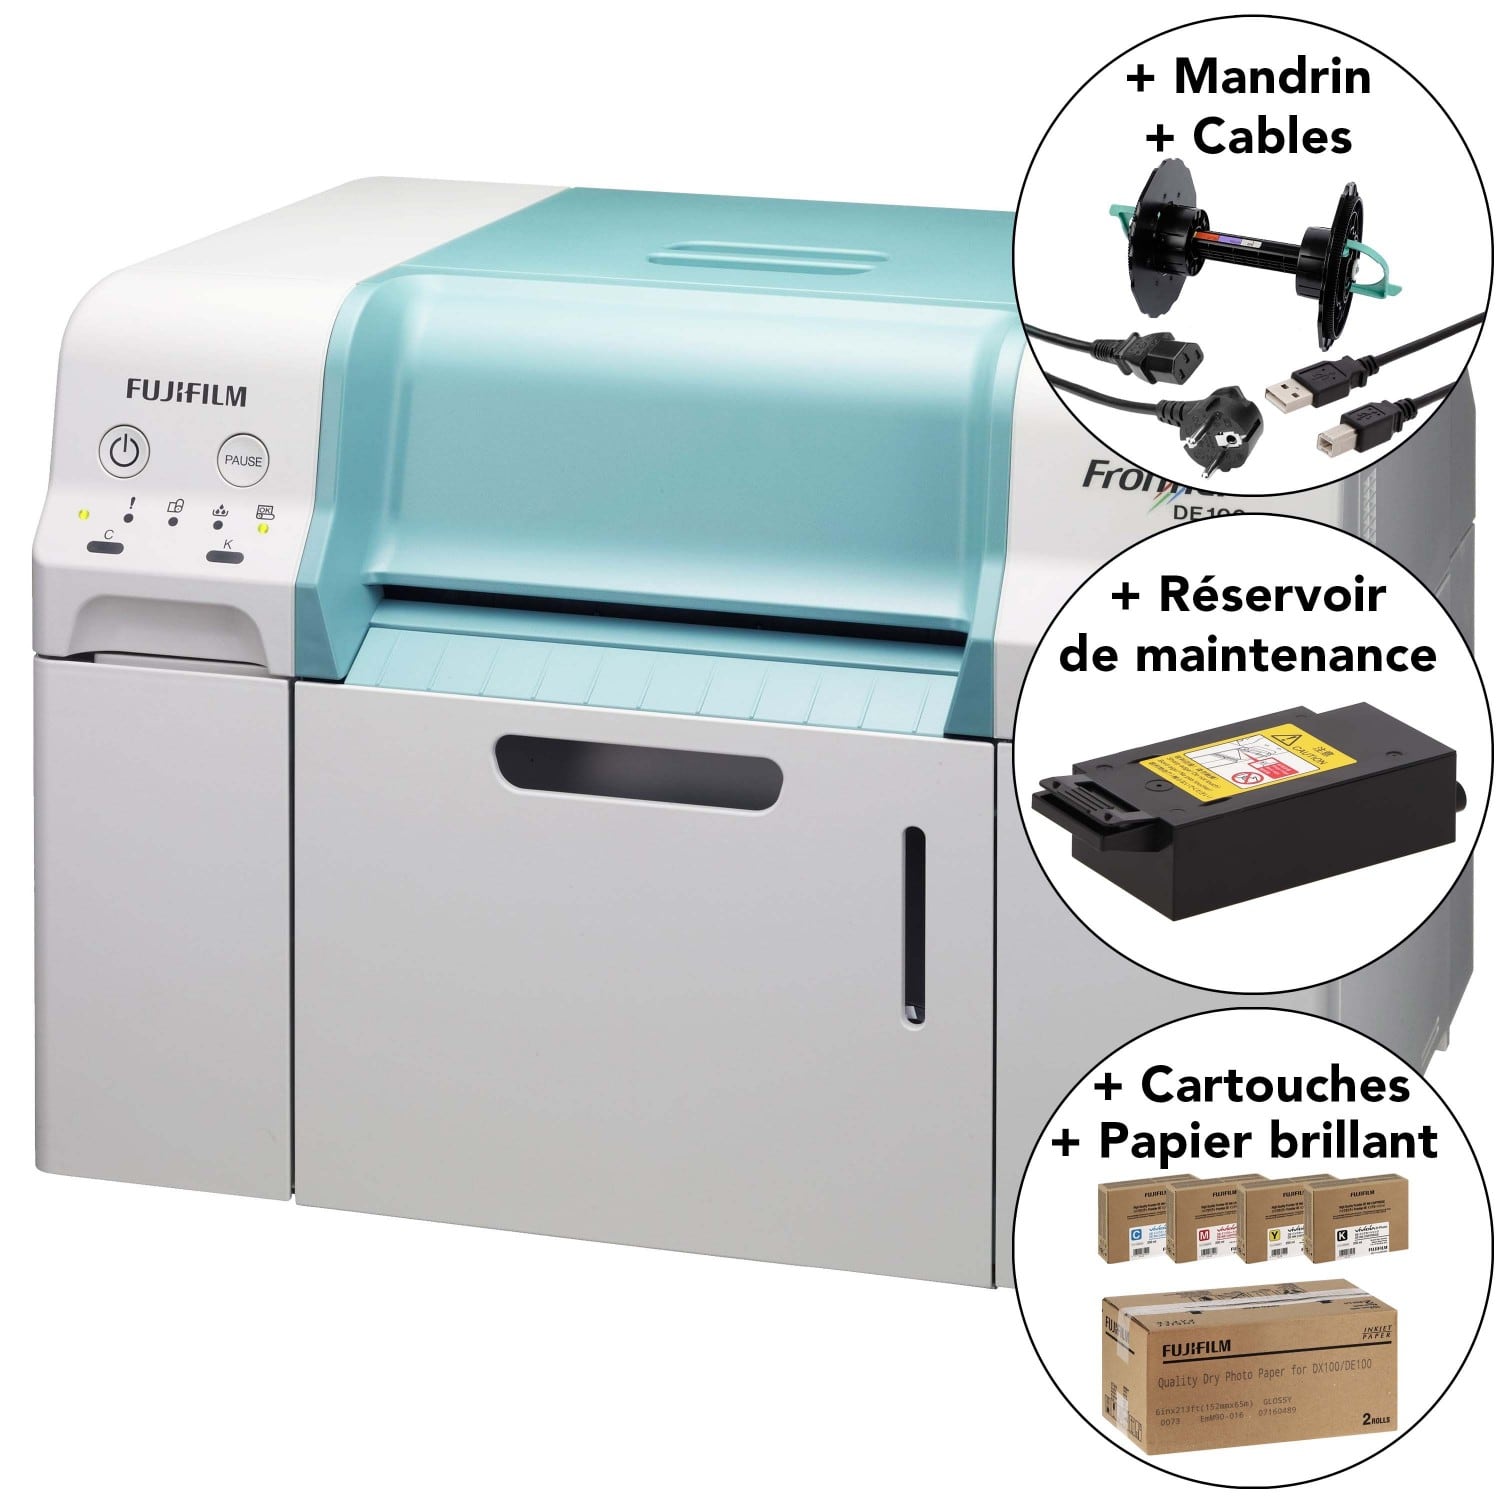 Les cartouches d'imprimantes à jet d'encre : principe